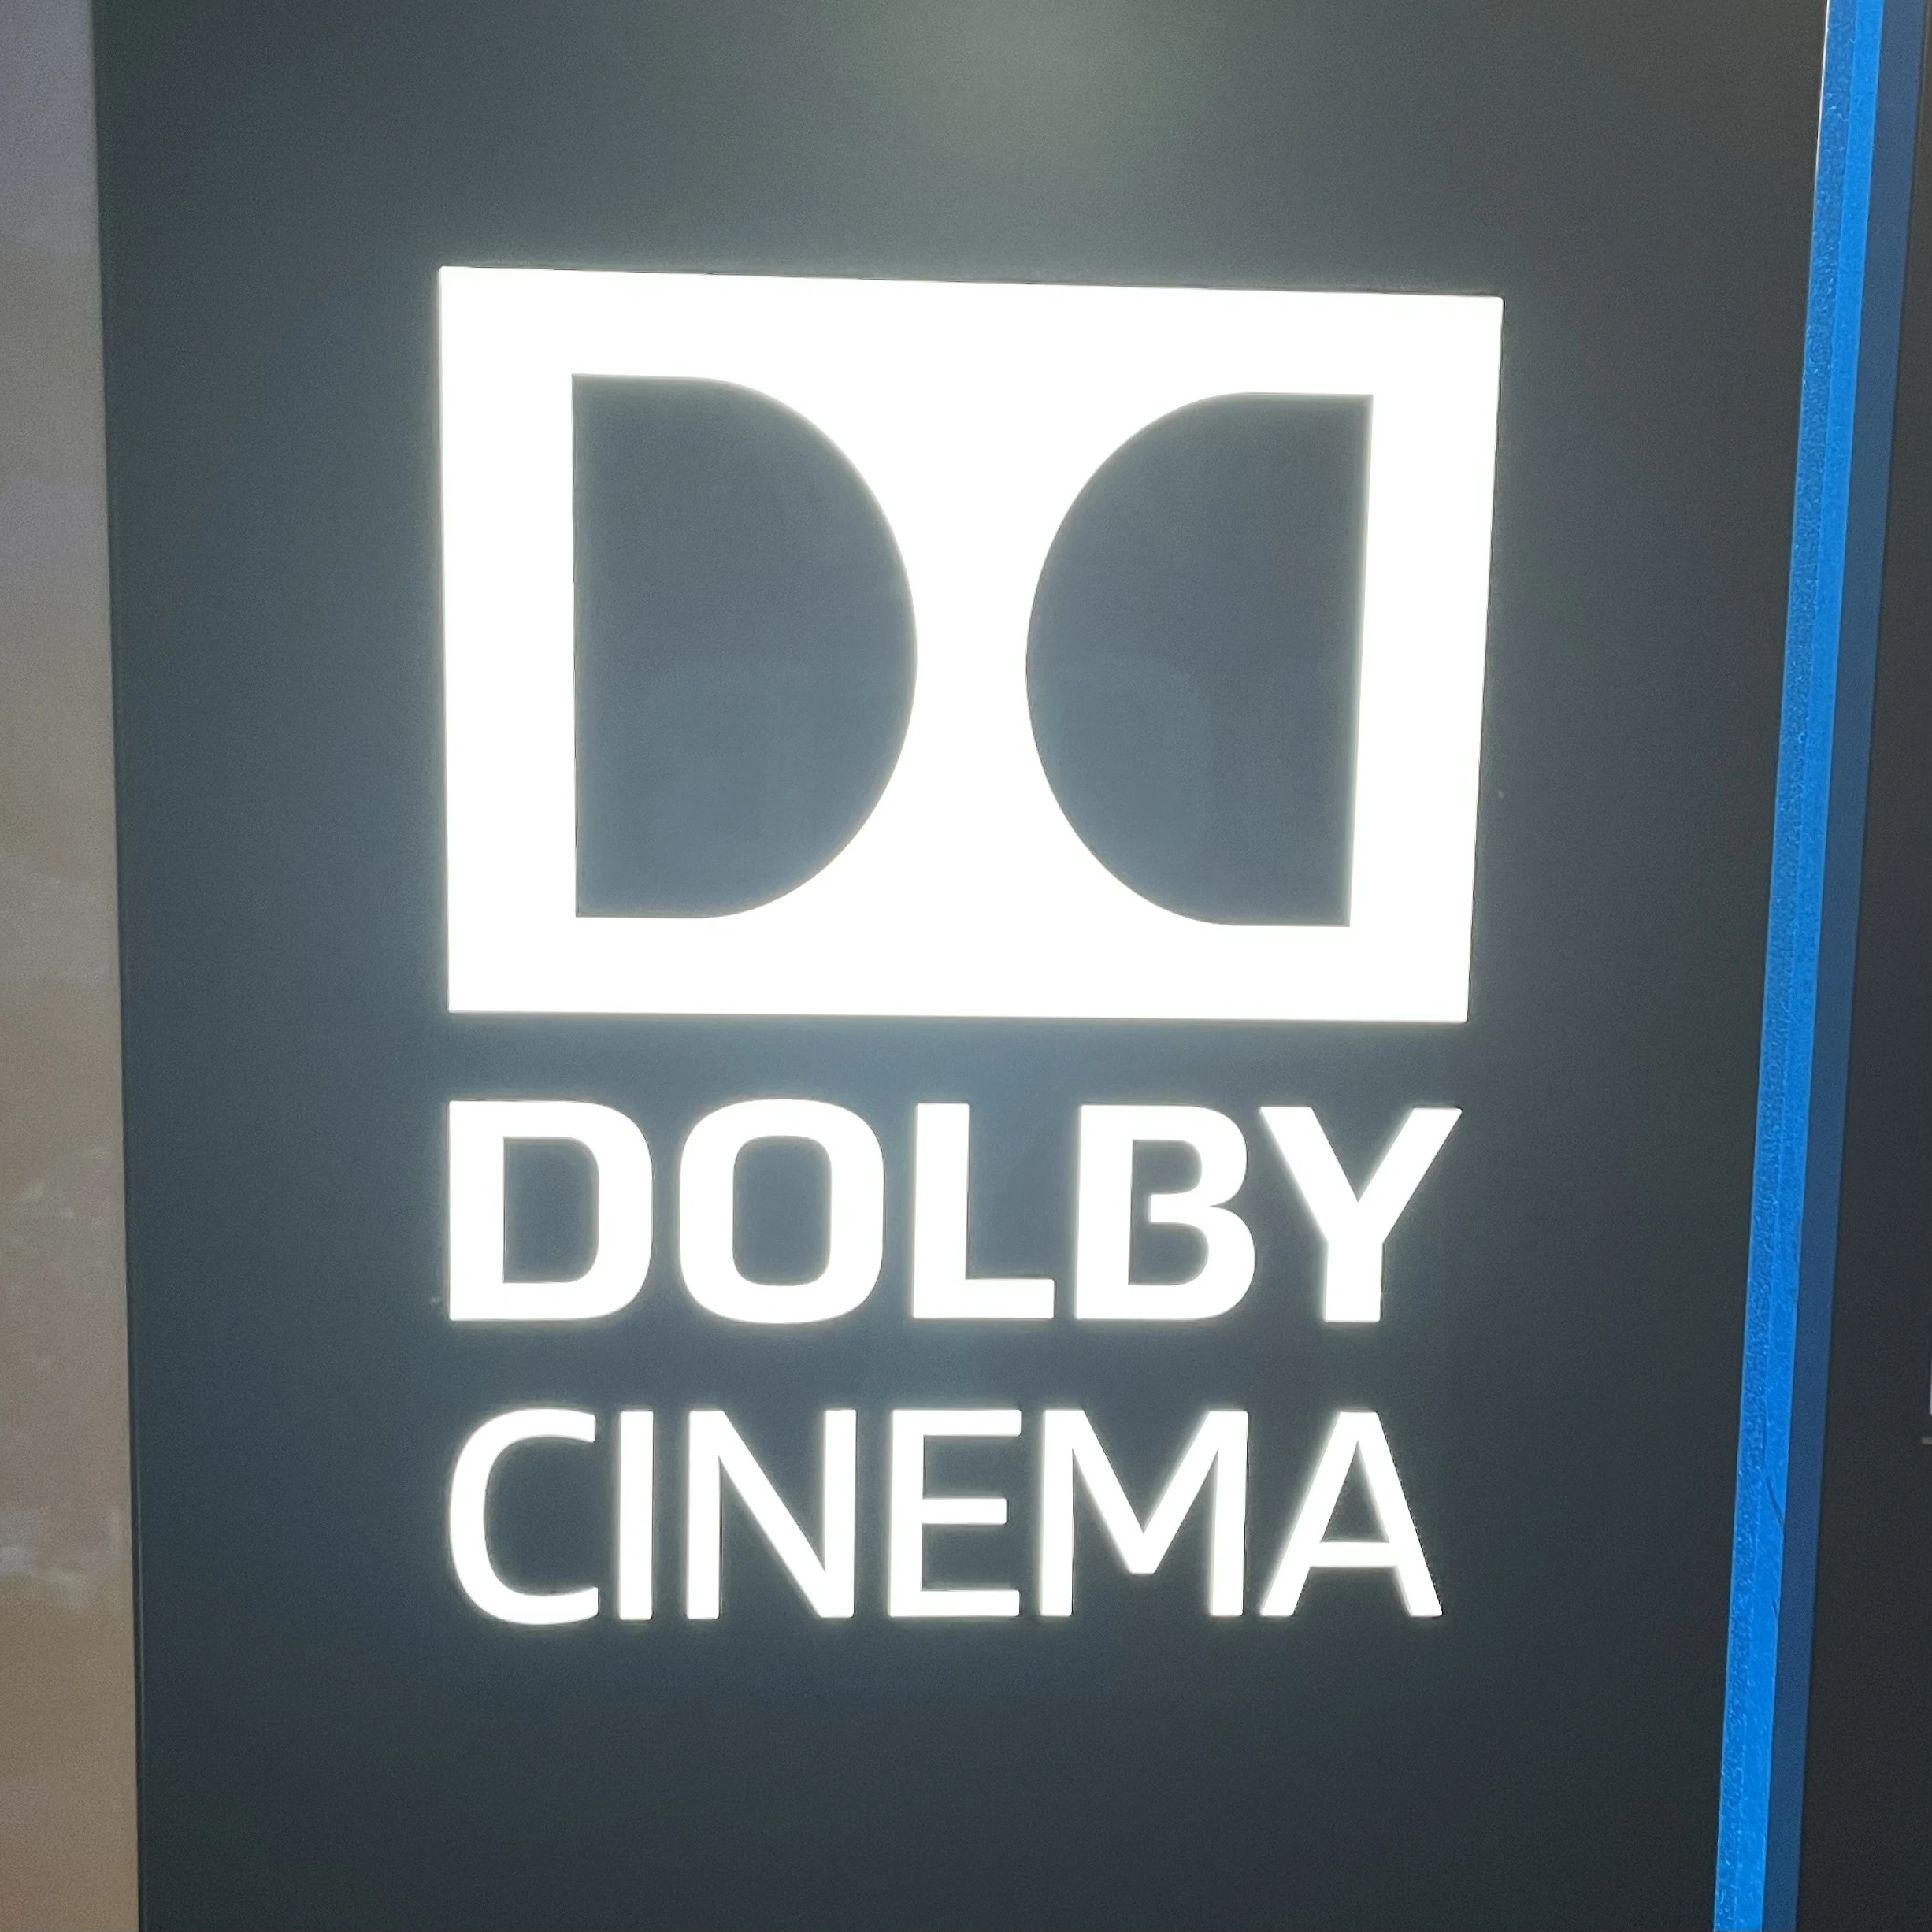 Dollby Cinema ドルビーシネマ